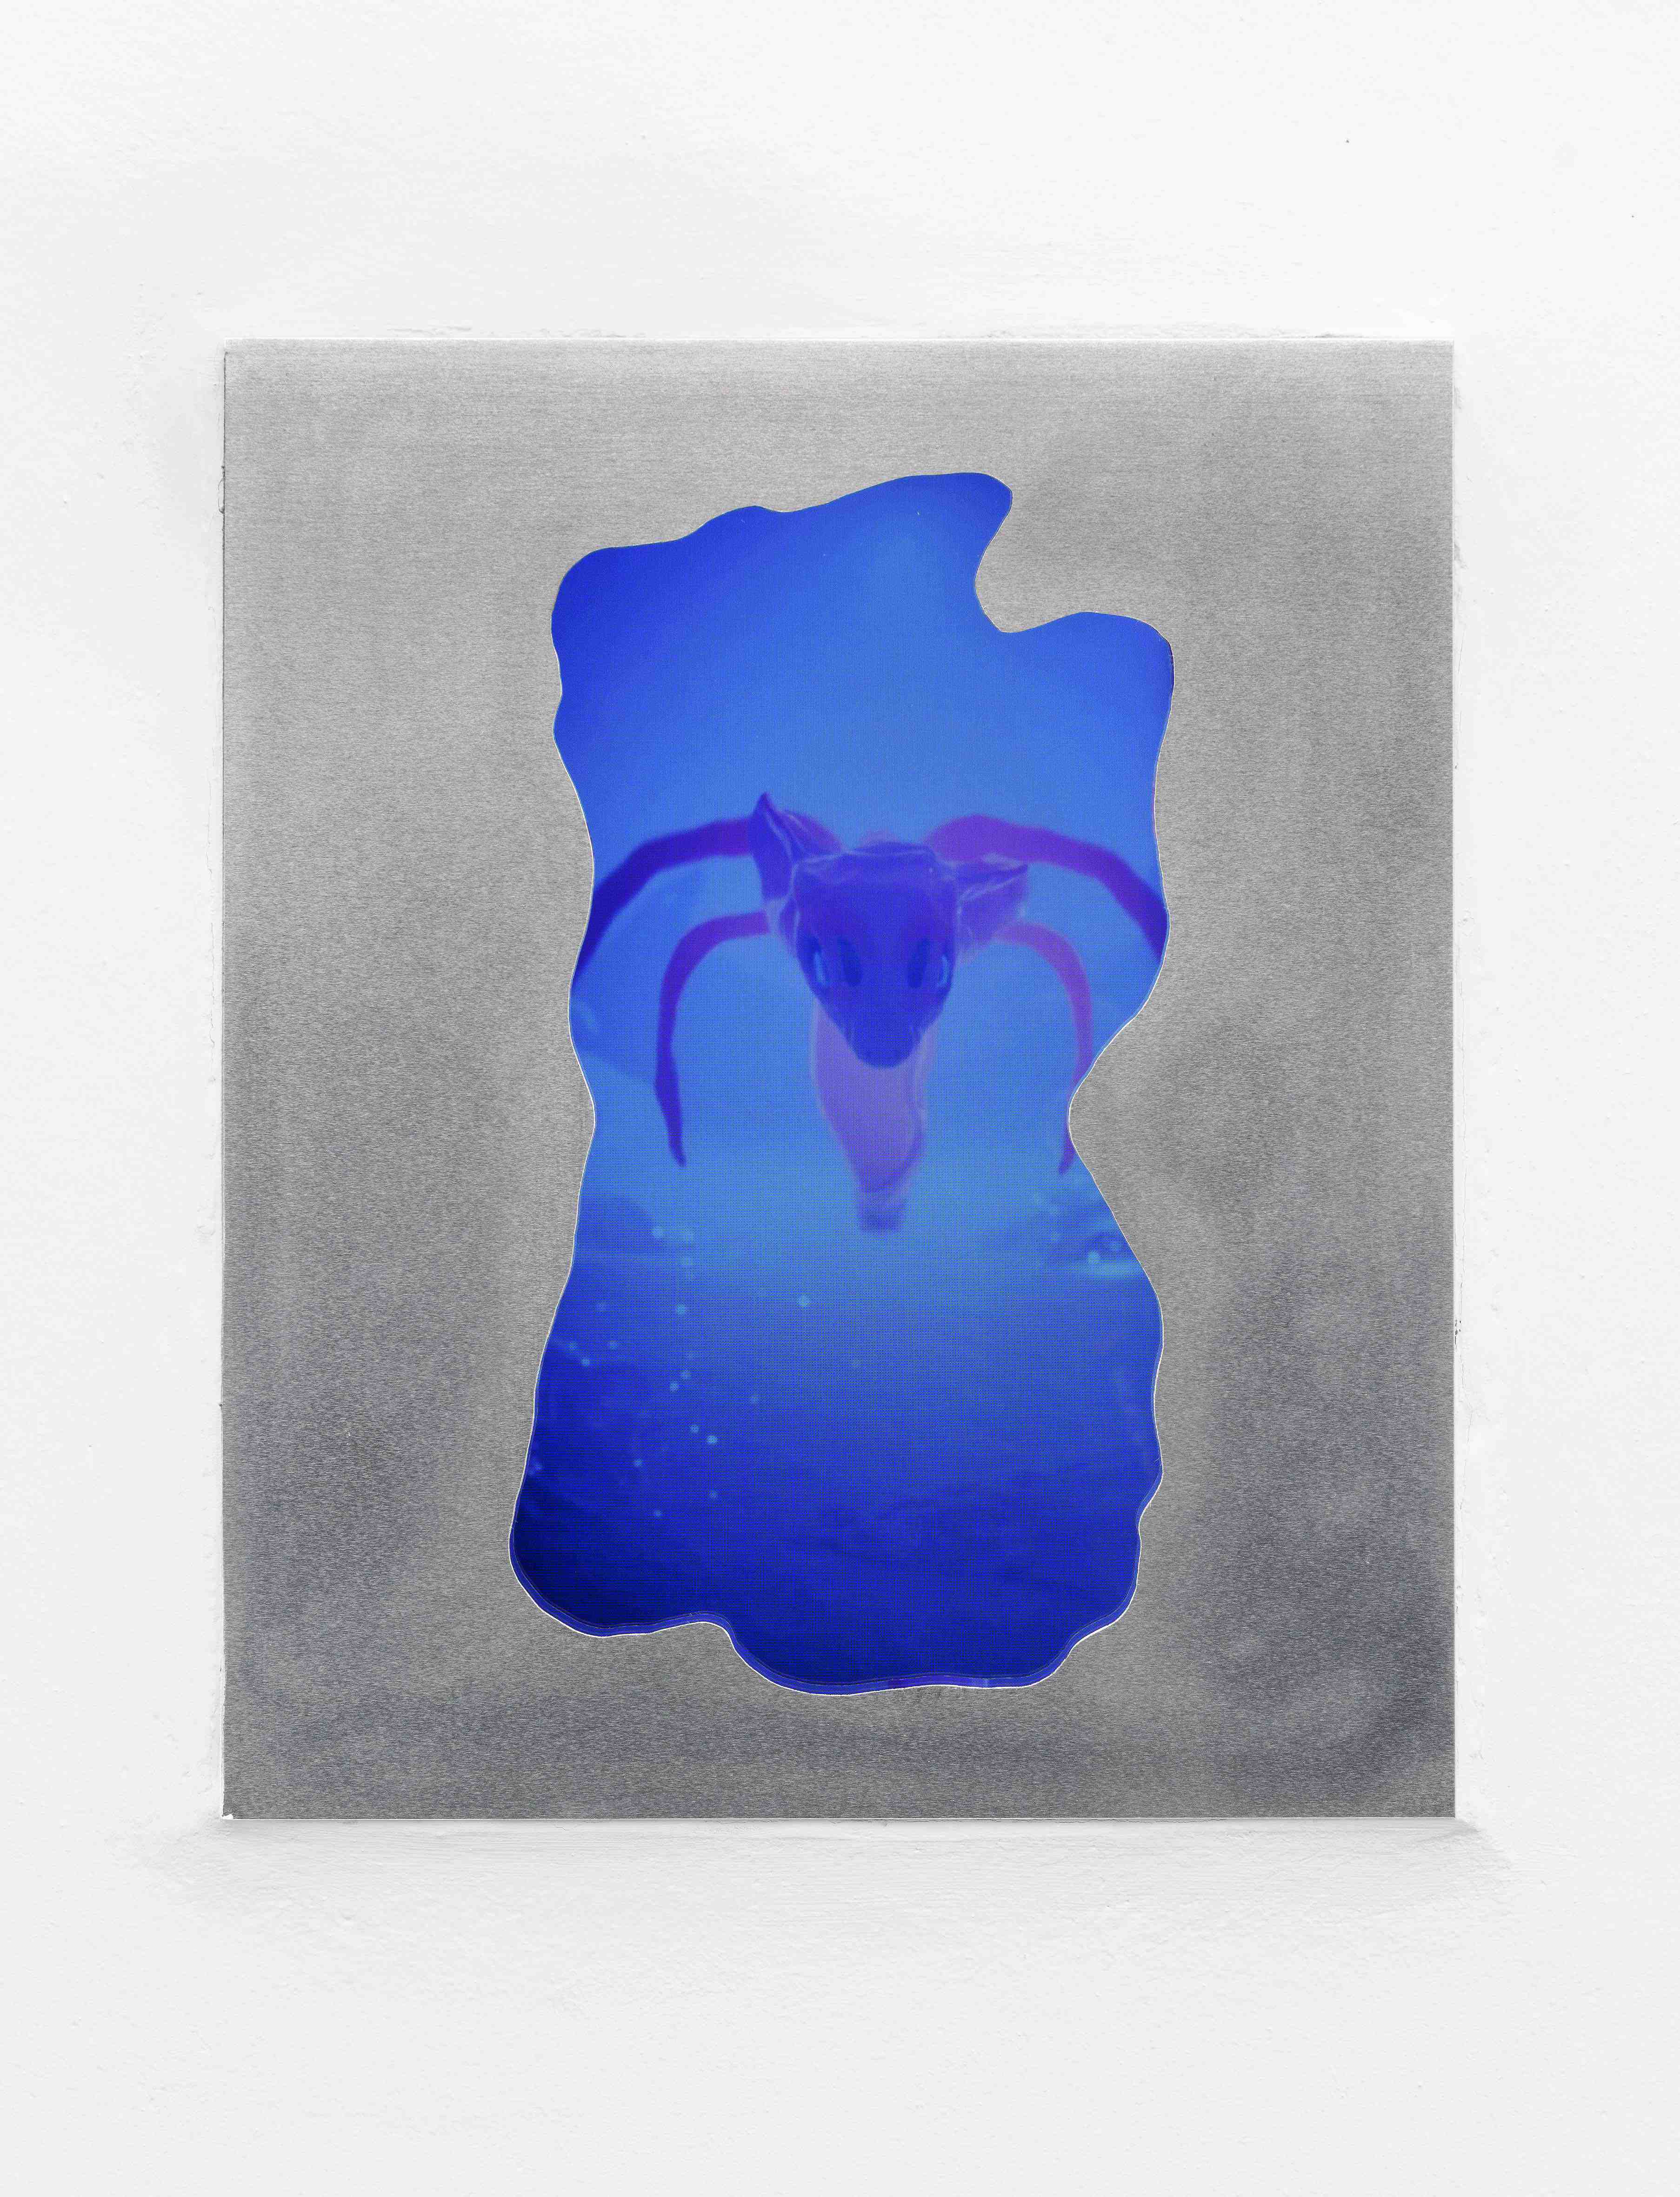 Mary-Audrey Ramirez, Forced Amnesia, installation view (Rotting peaking through, film still, 2 min loop digital video, 2023), Kunsthalle Gießen, 2023 © Günzel Rademacher